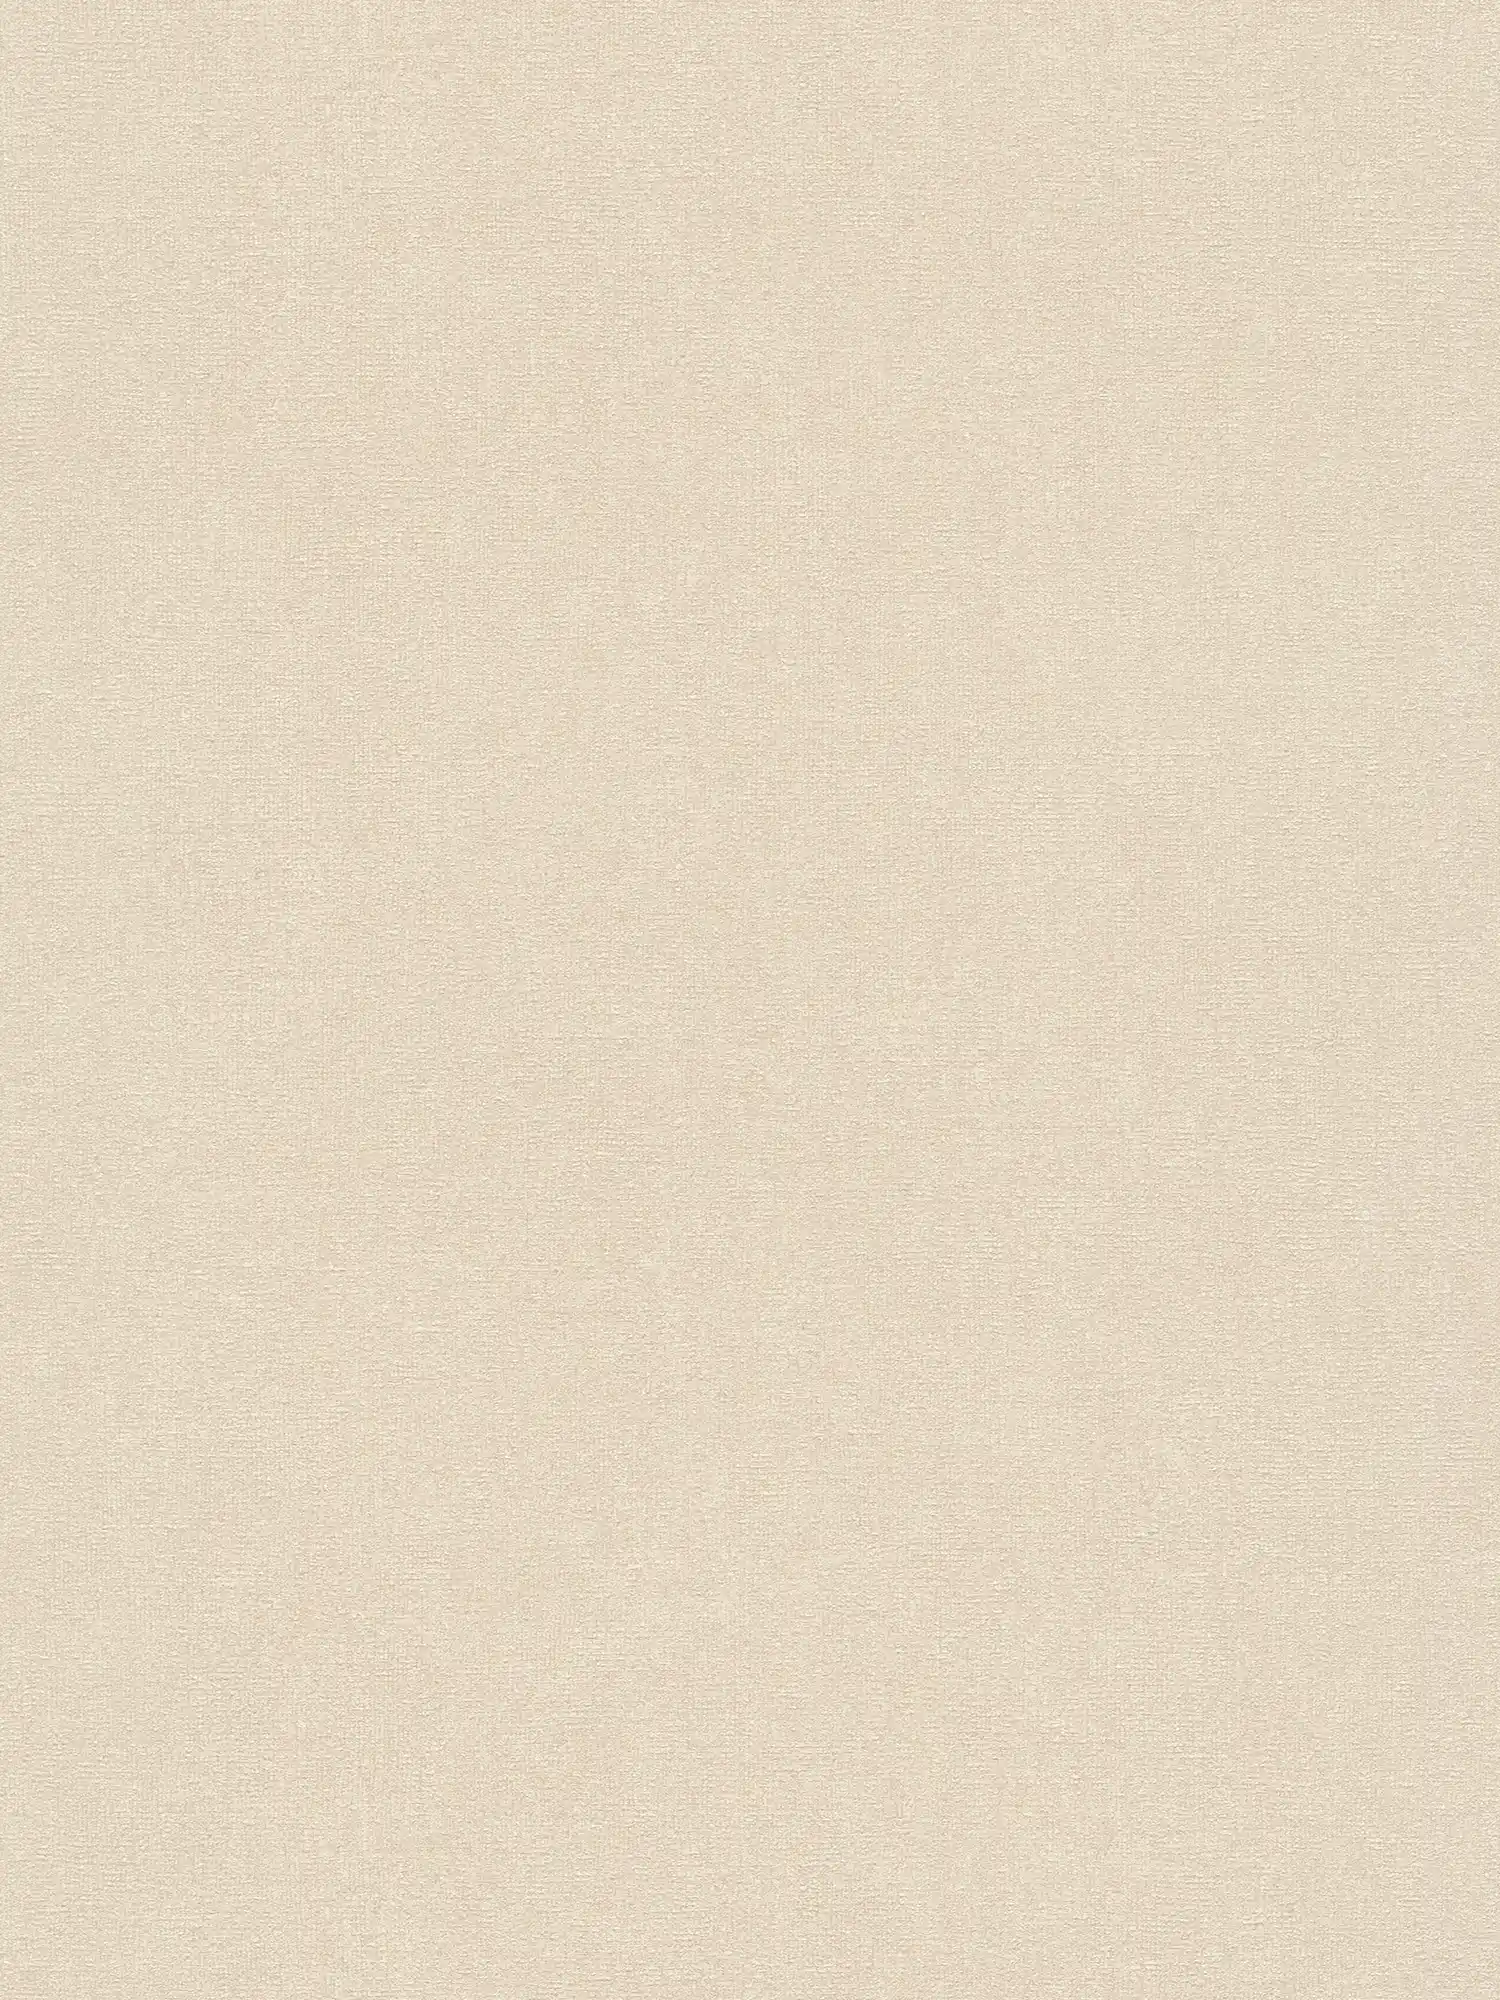         Papier peint intissé uni à structure fine - crème, beige
    